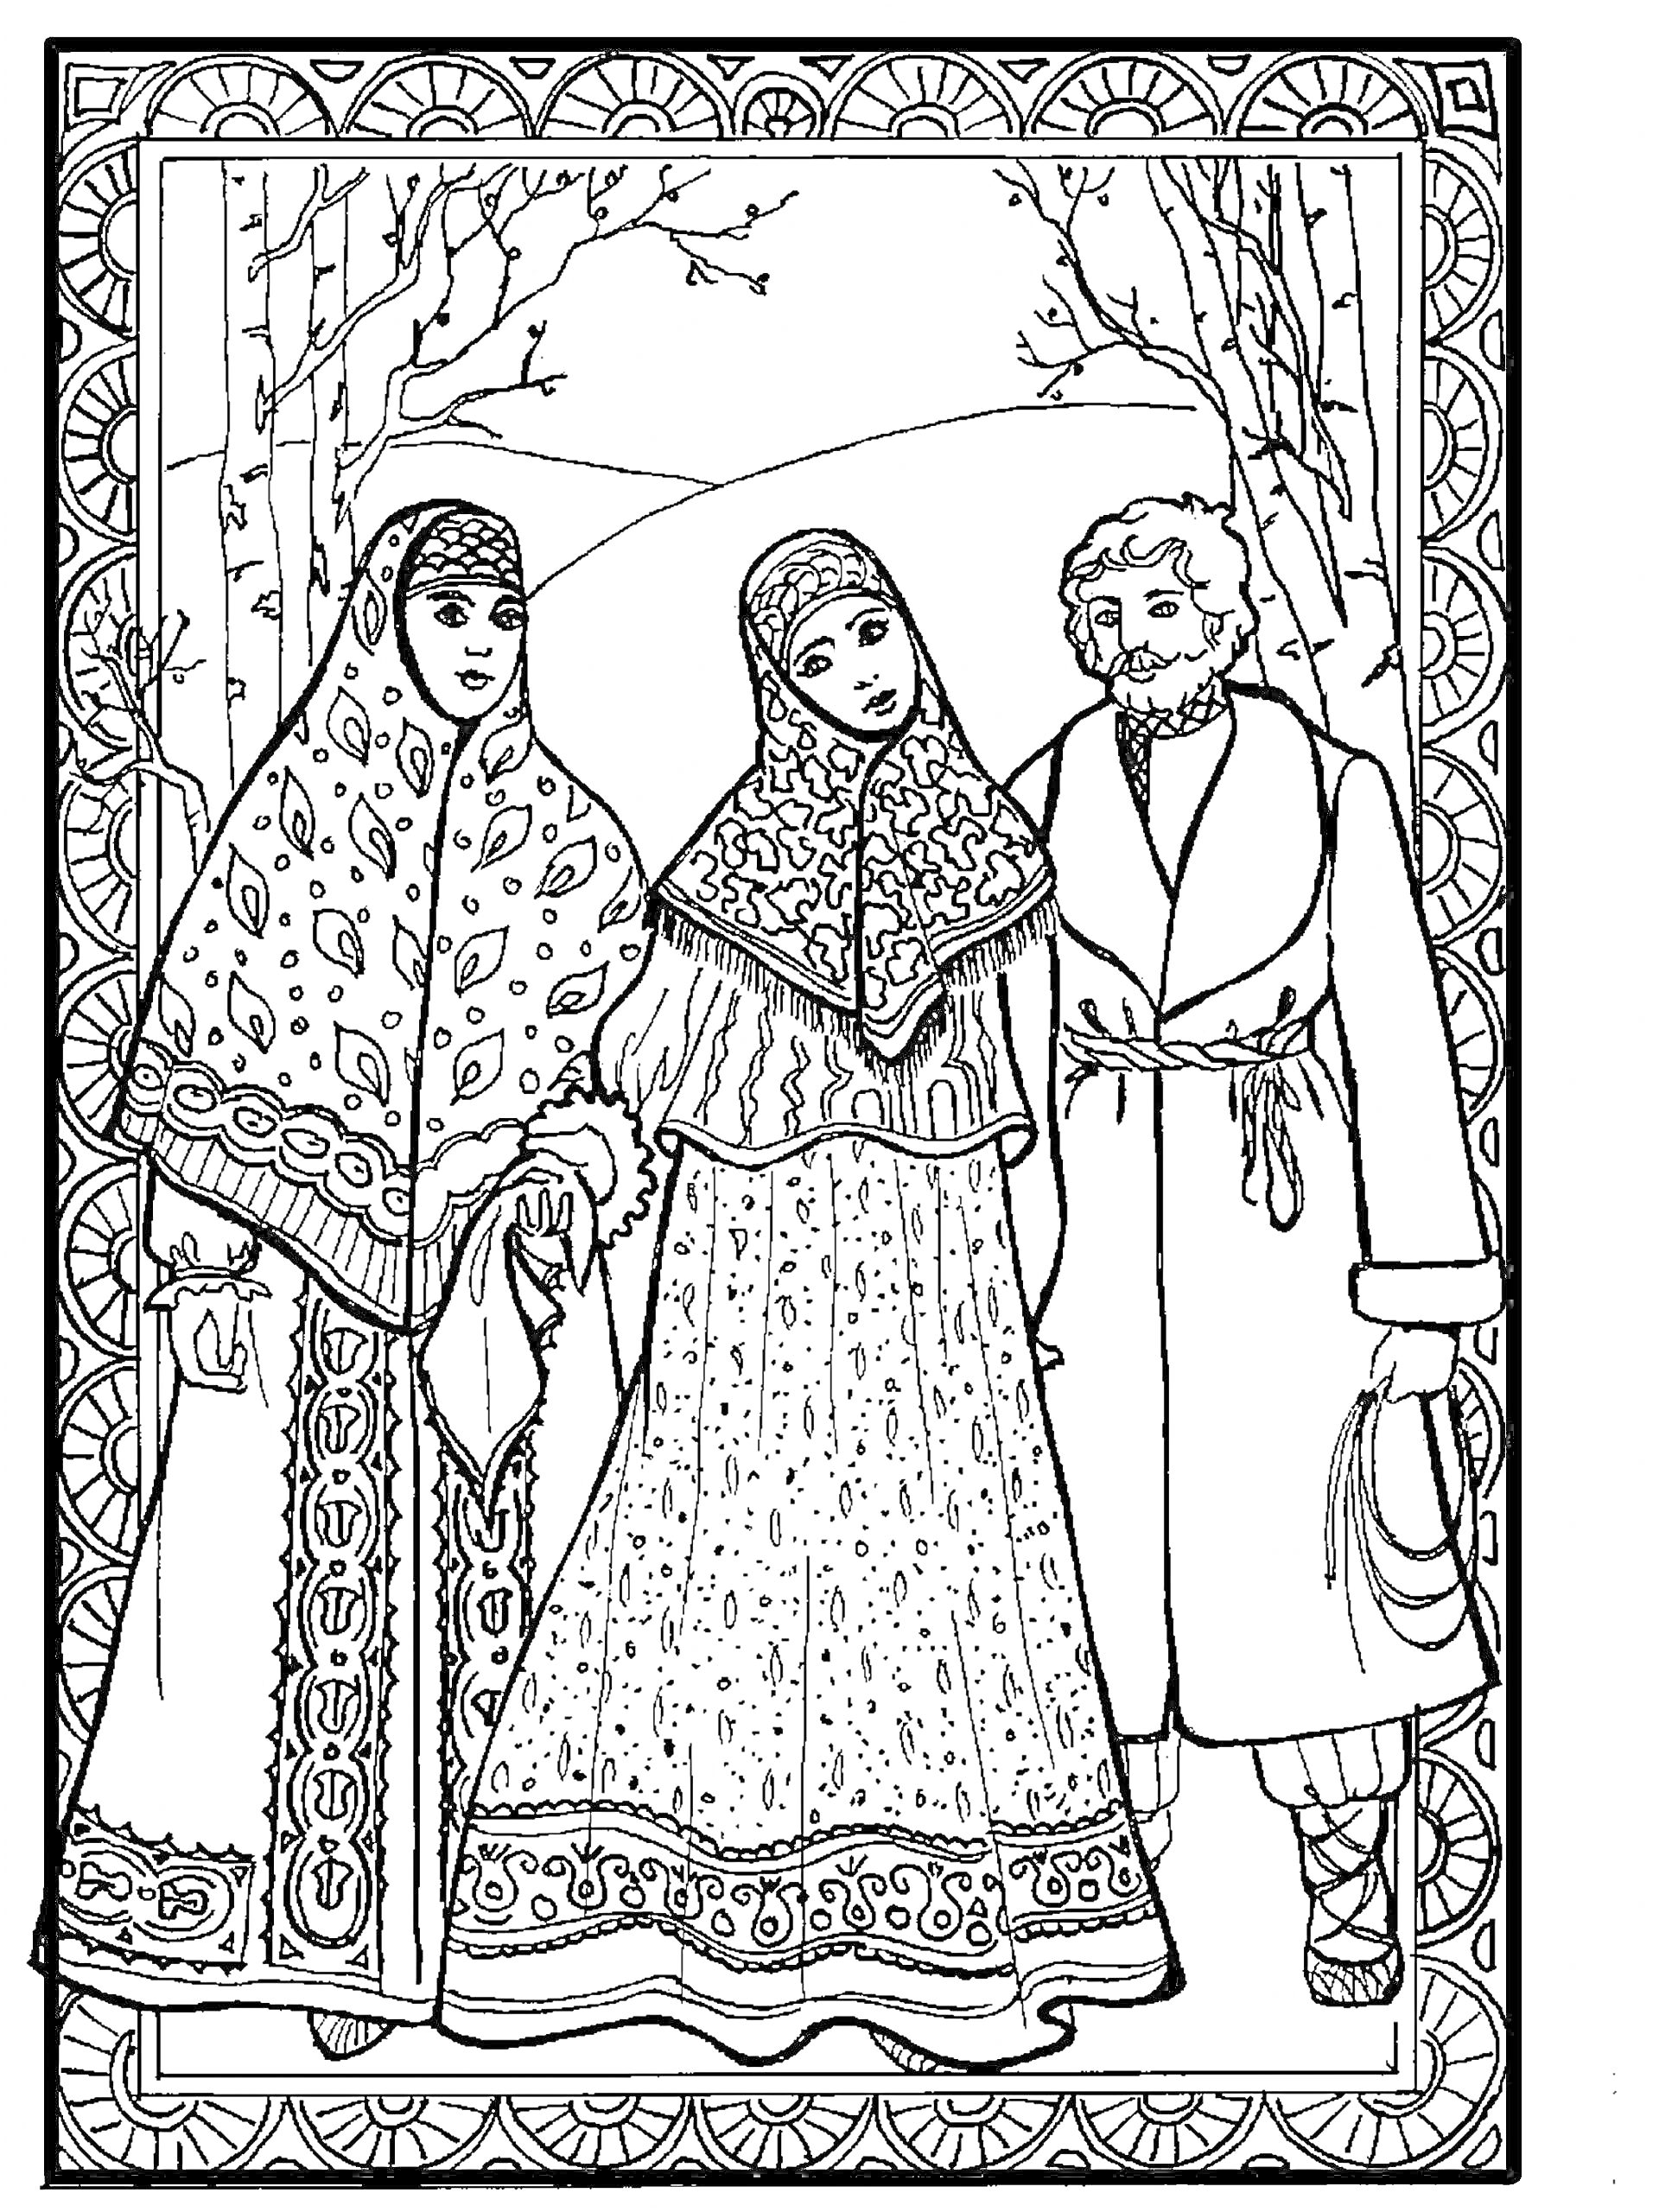 Двое женщин в русских народных костюмах и мужчина в русской традиционной одежде в зимнем лесу с орнаментом